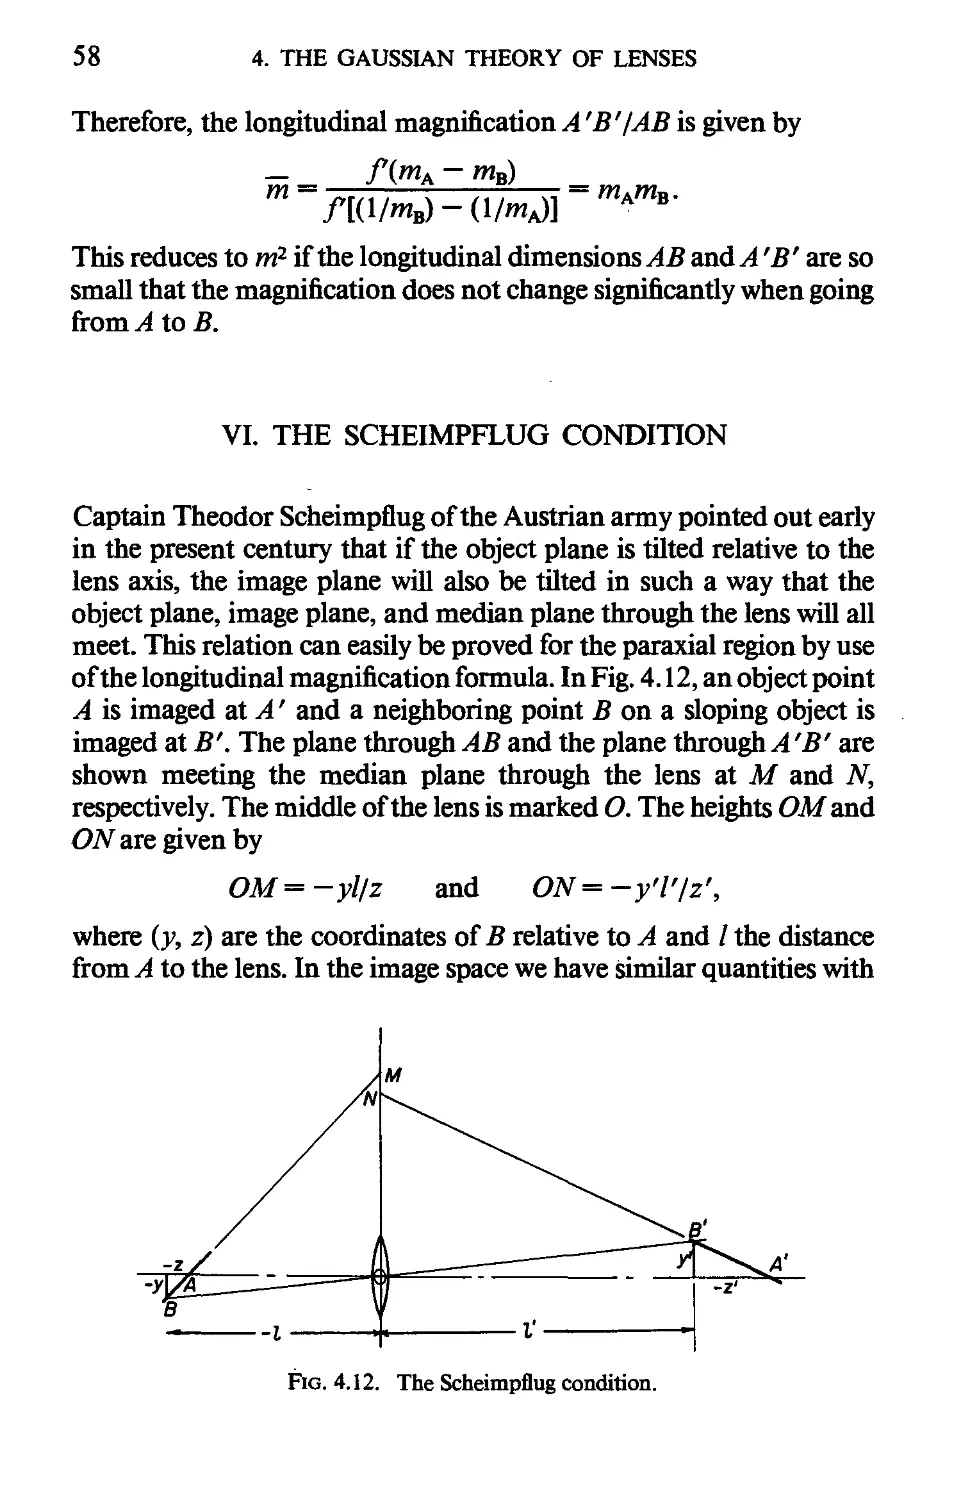 VI. The Scheimpflug Condition